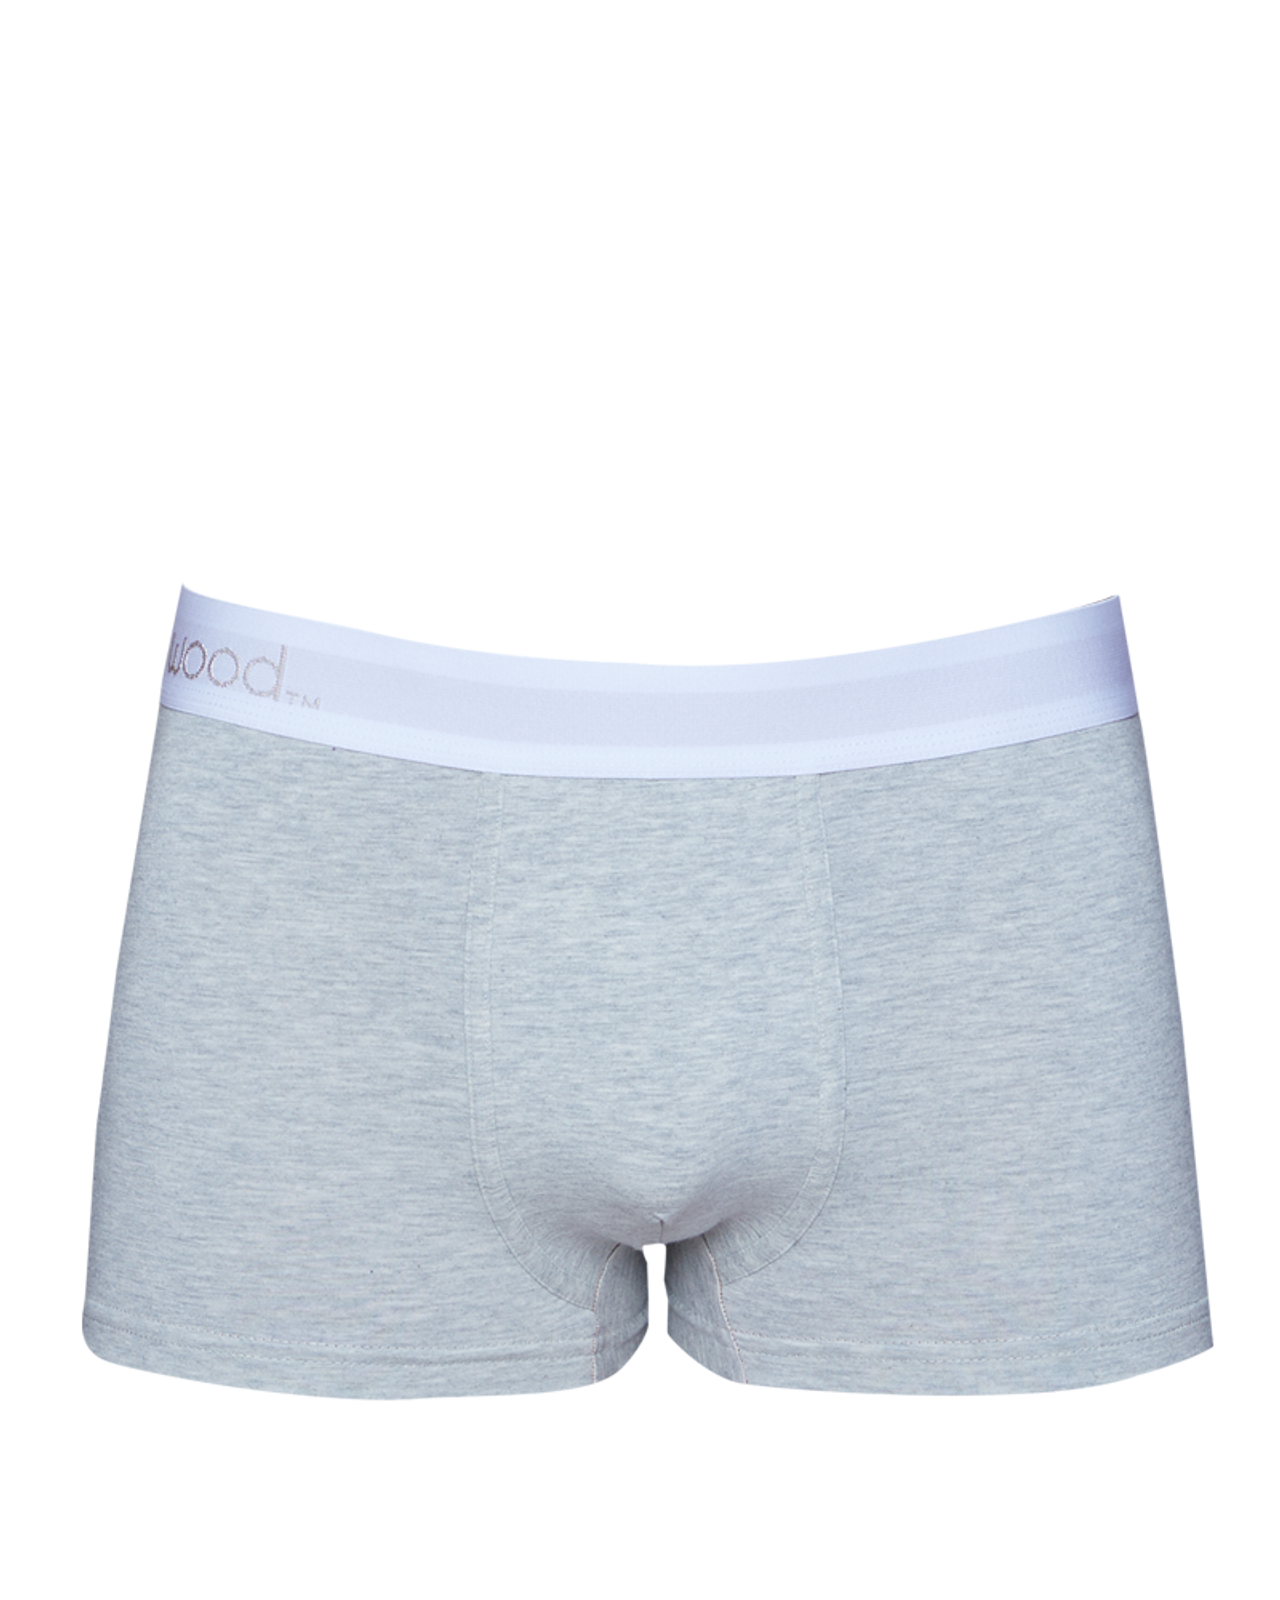 Buy Mens Underwear at Online Store in 20% OFF | Wood Underwear